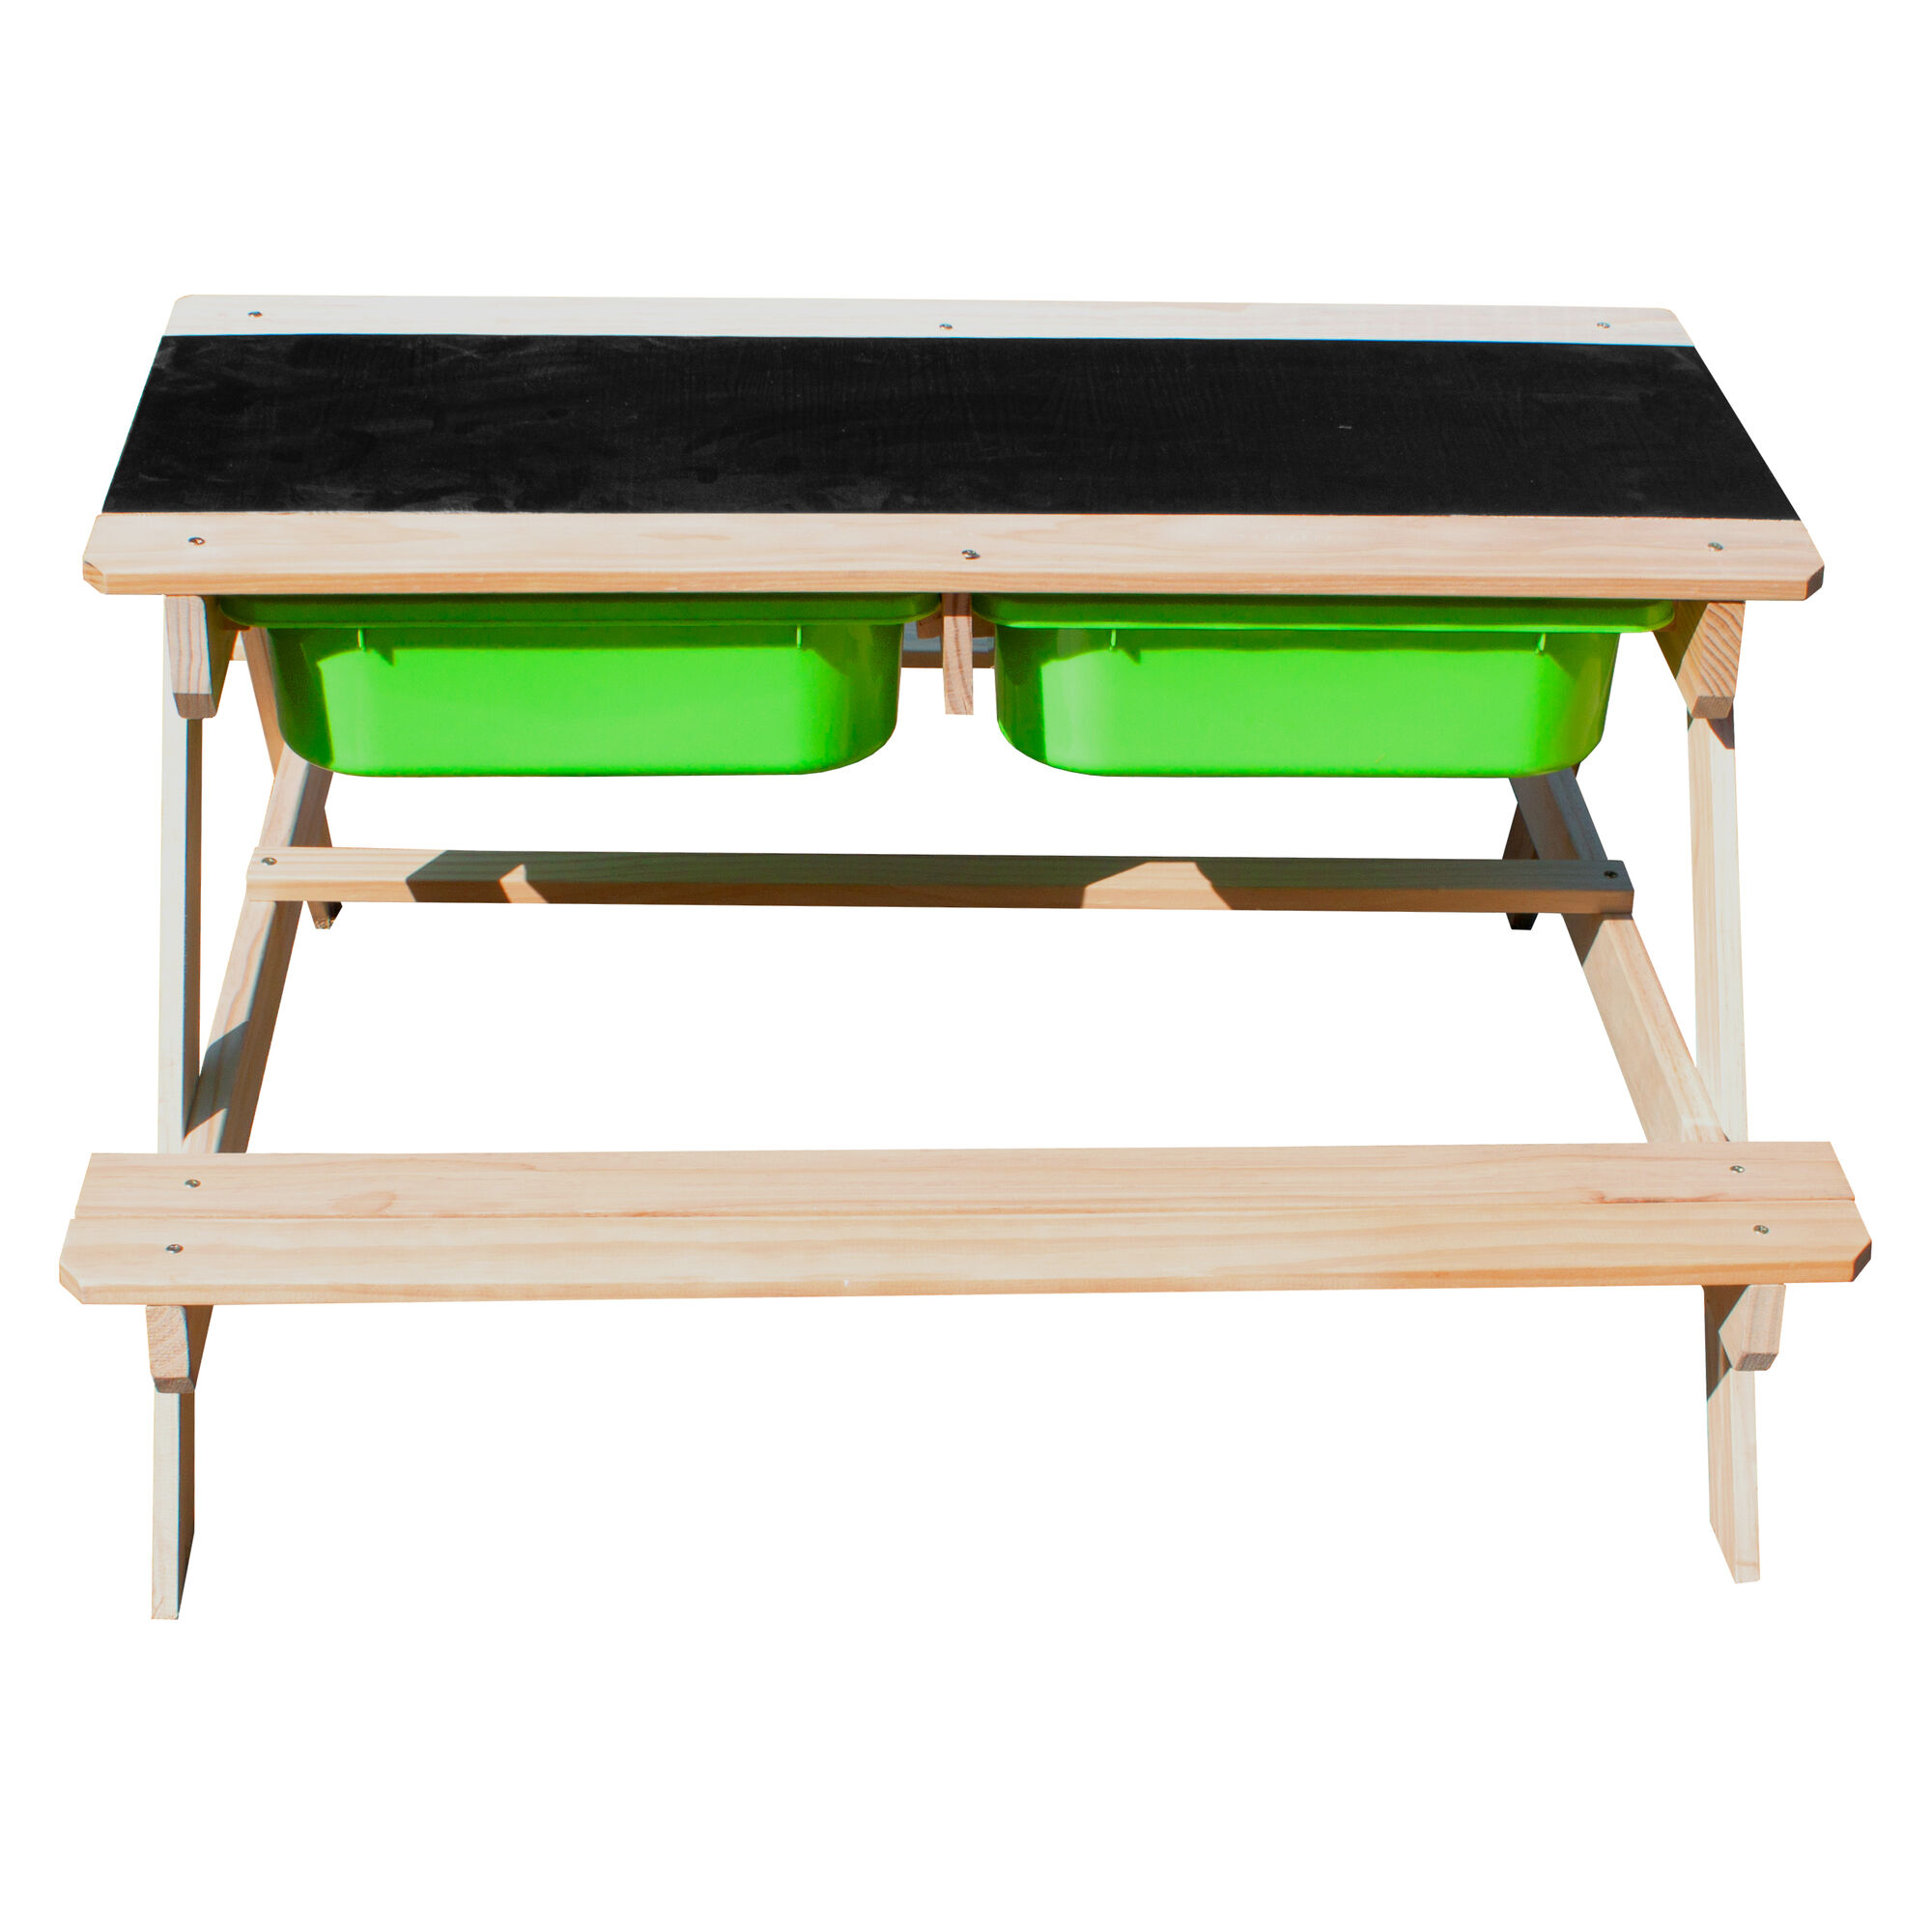 Sunny Dual Top 2.0 Sand und Wasser Picknicktisch - Mit Kreidetafel und grünen Behältern